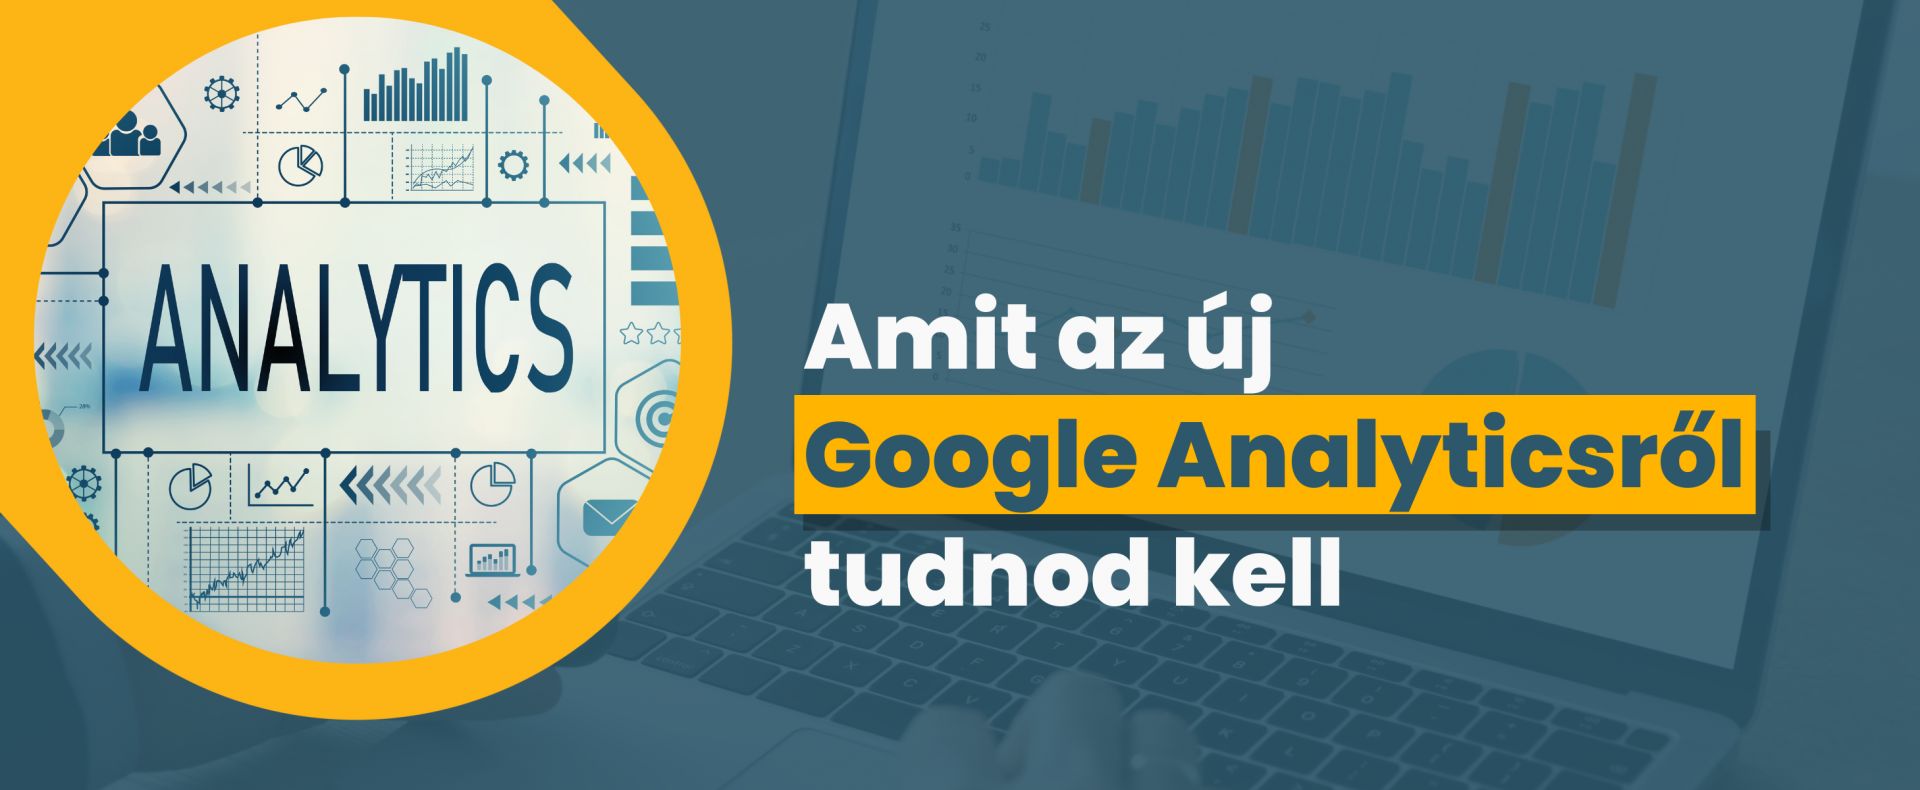 Amit az új Google Analyticsről tudnod kell